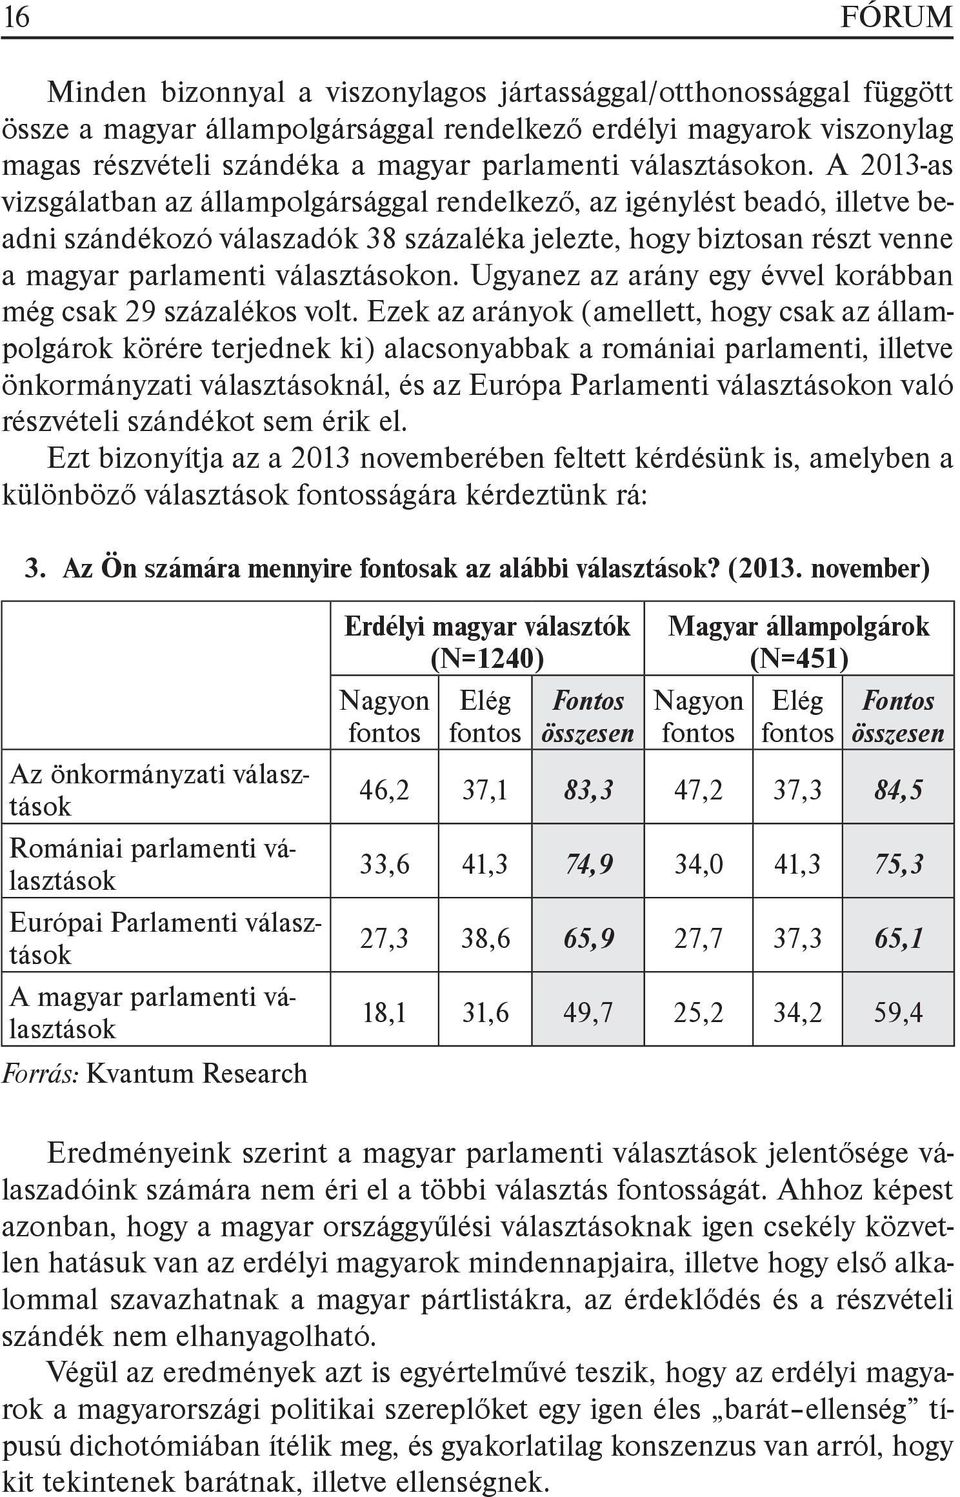 A 2013-as vizsgálatban az állampolgársággal rendelkező, az igénylést beadó, illetve beadni szándékozó válaszadók 38 százaléka jelezte, hogy biztosan részt venne a magyar parlamenti  Ugyanez az arány